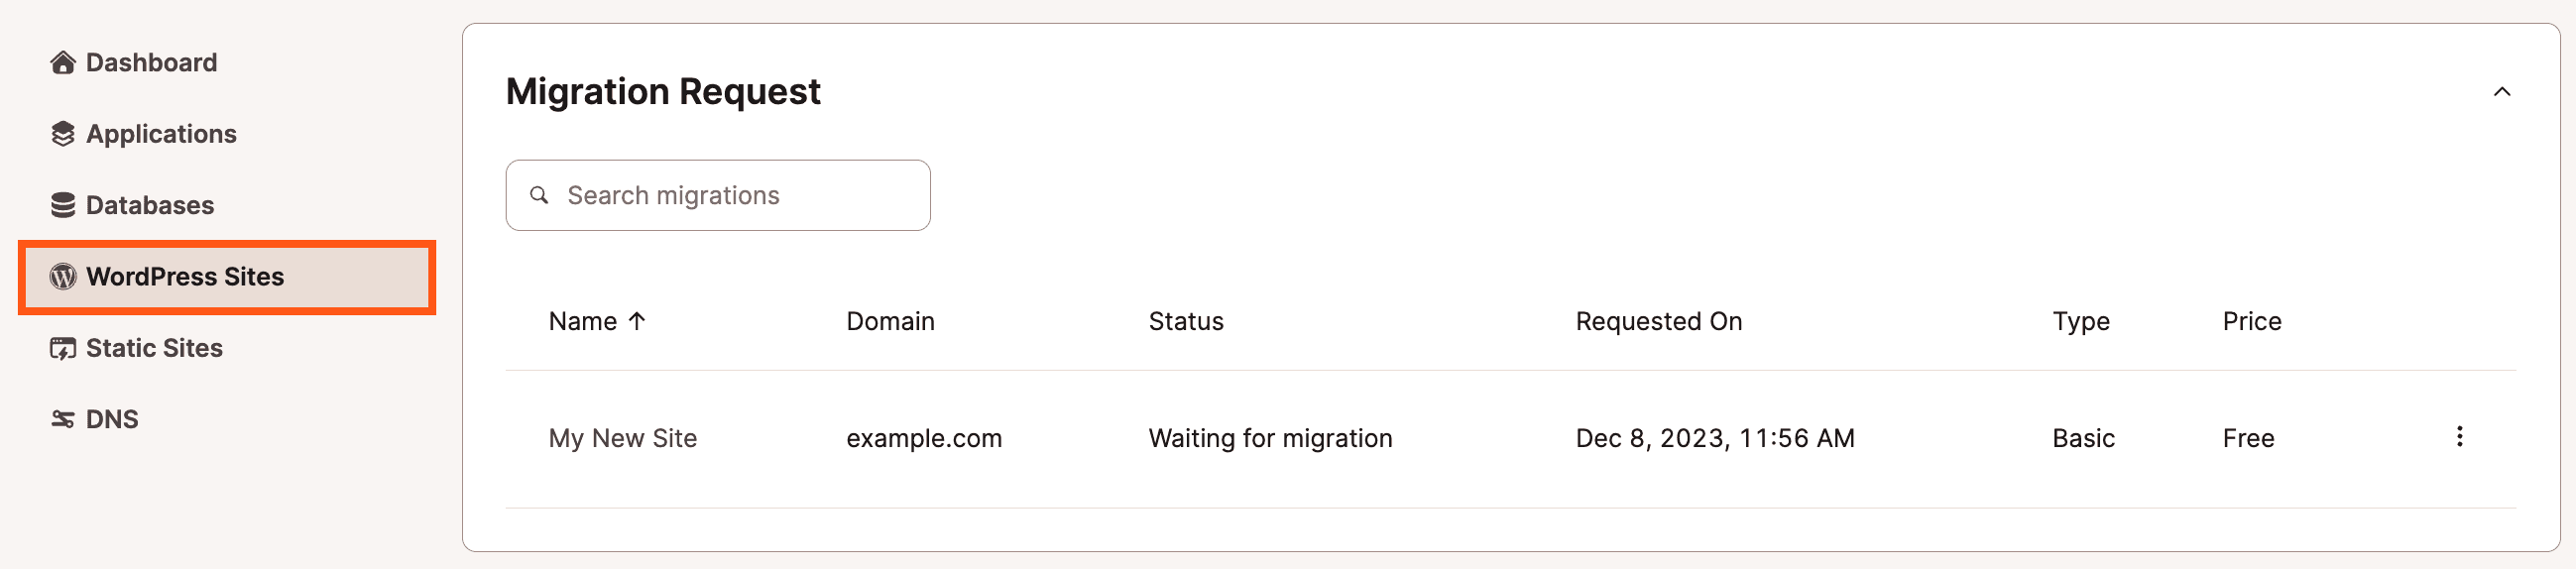 Visualizzare le richieste di migrazione nella pagina dei Siti WordPress in MyKinsta.